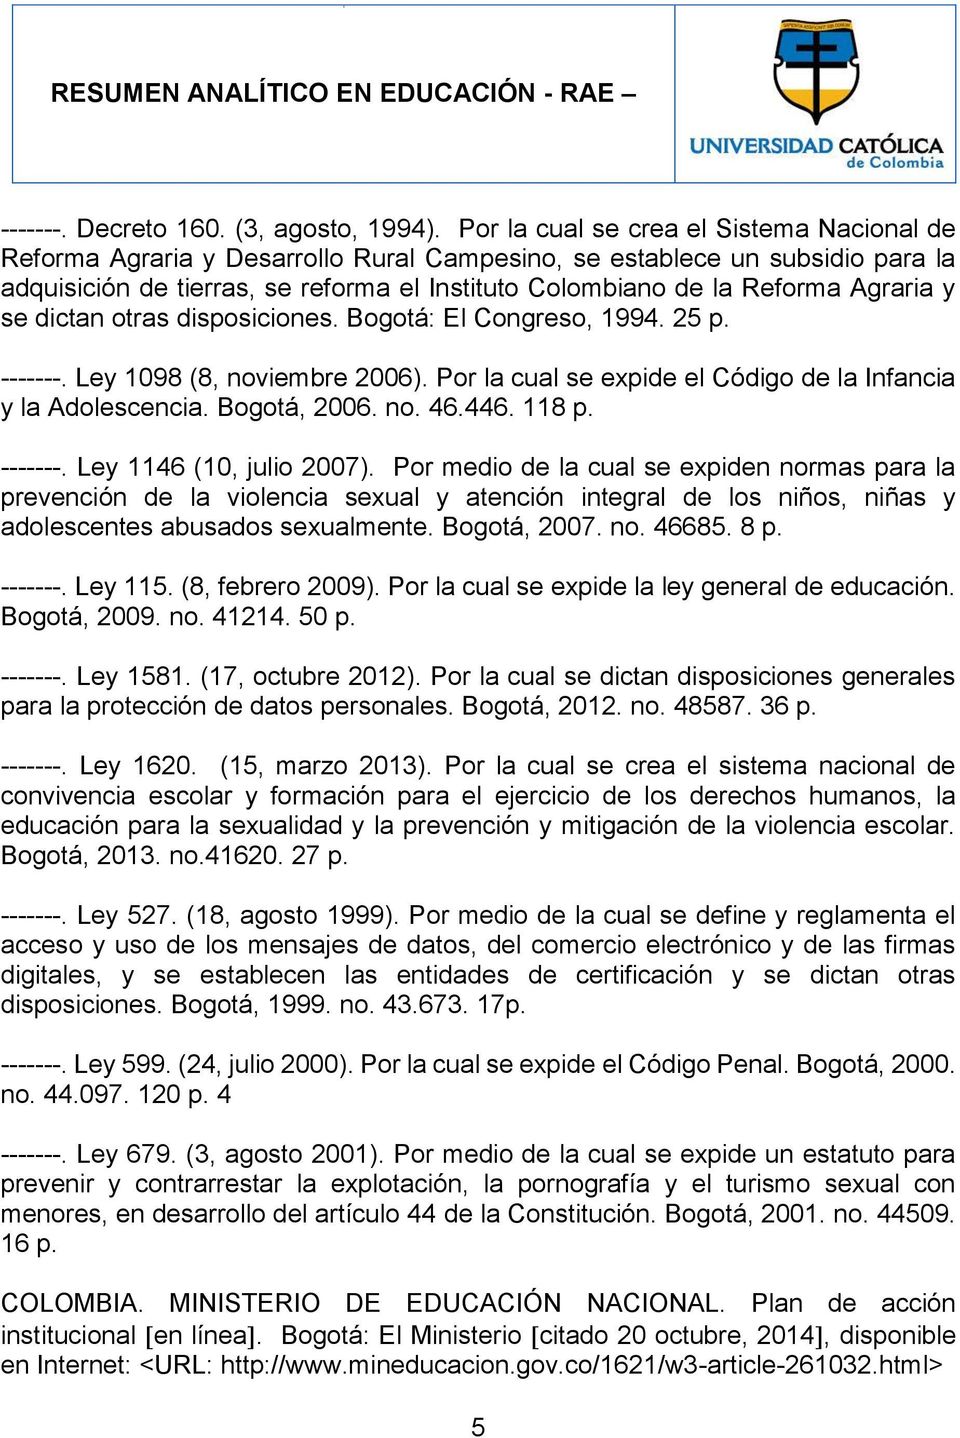 Agraria y se dictan otras disposiciones. Bogotá: El Congreso, 1994. 25 p. -------. Ley 1098 (8, noviembre 2006). Por la cual se expide el Código de la Infancia y la Adolescencia. Bogotá, 2006. no. 46.